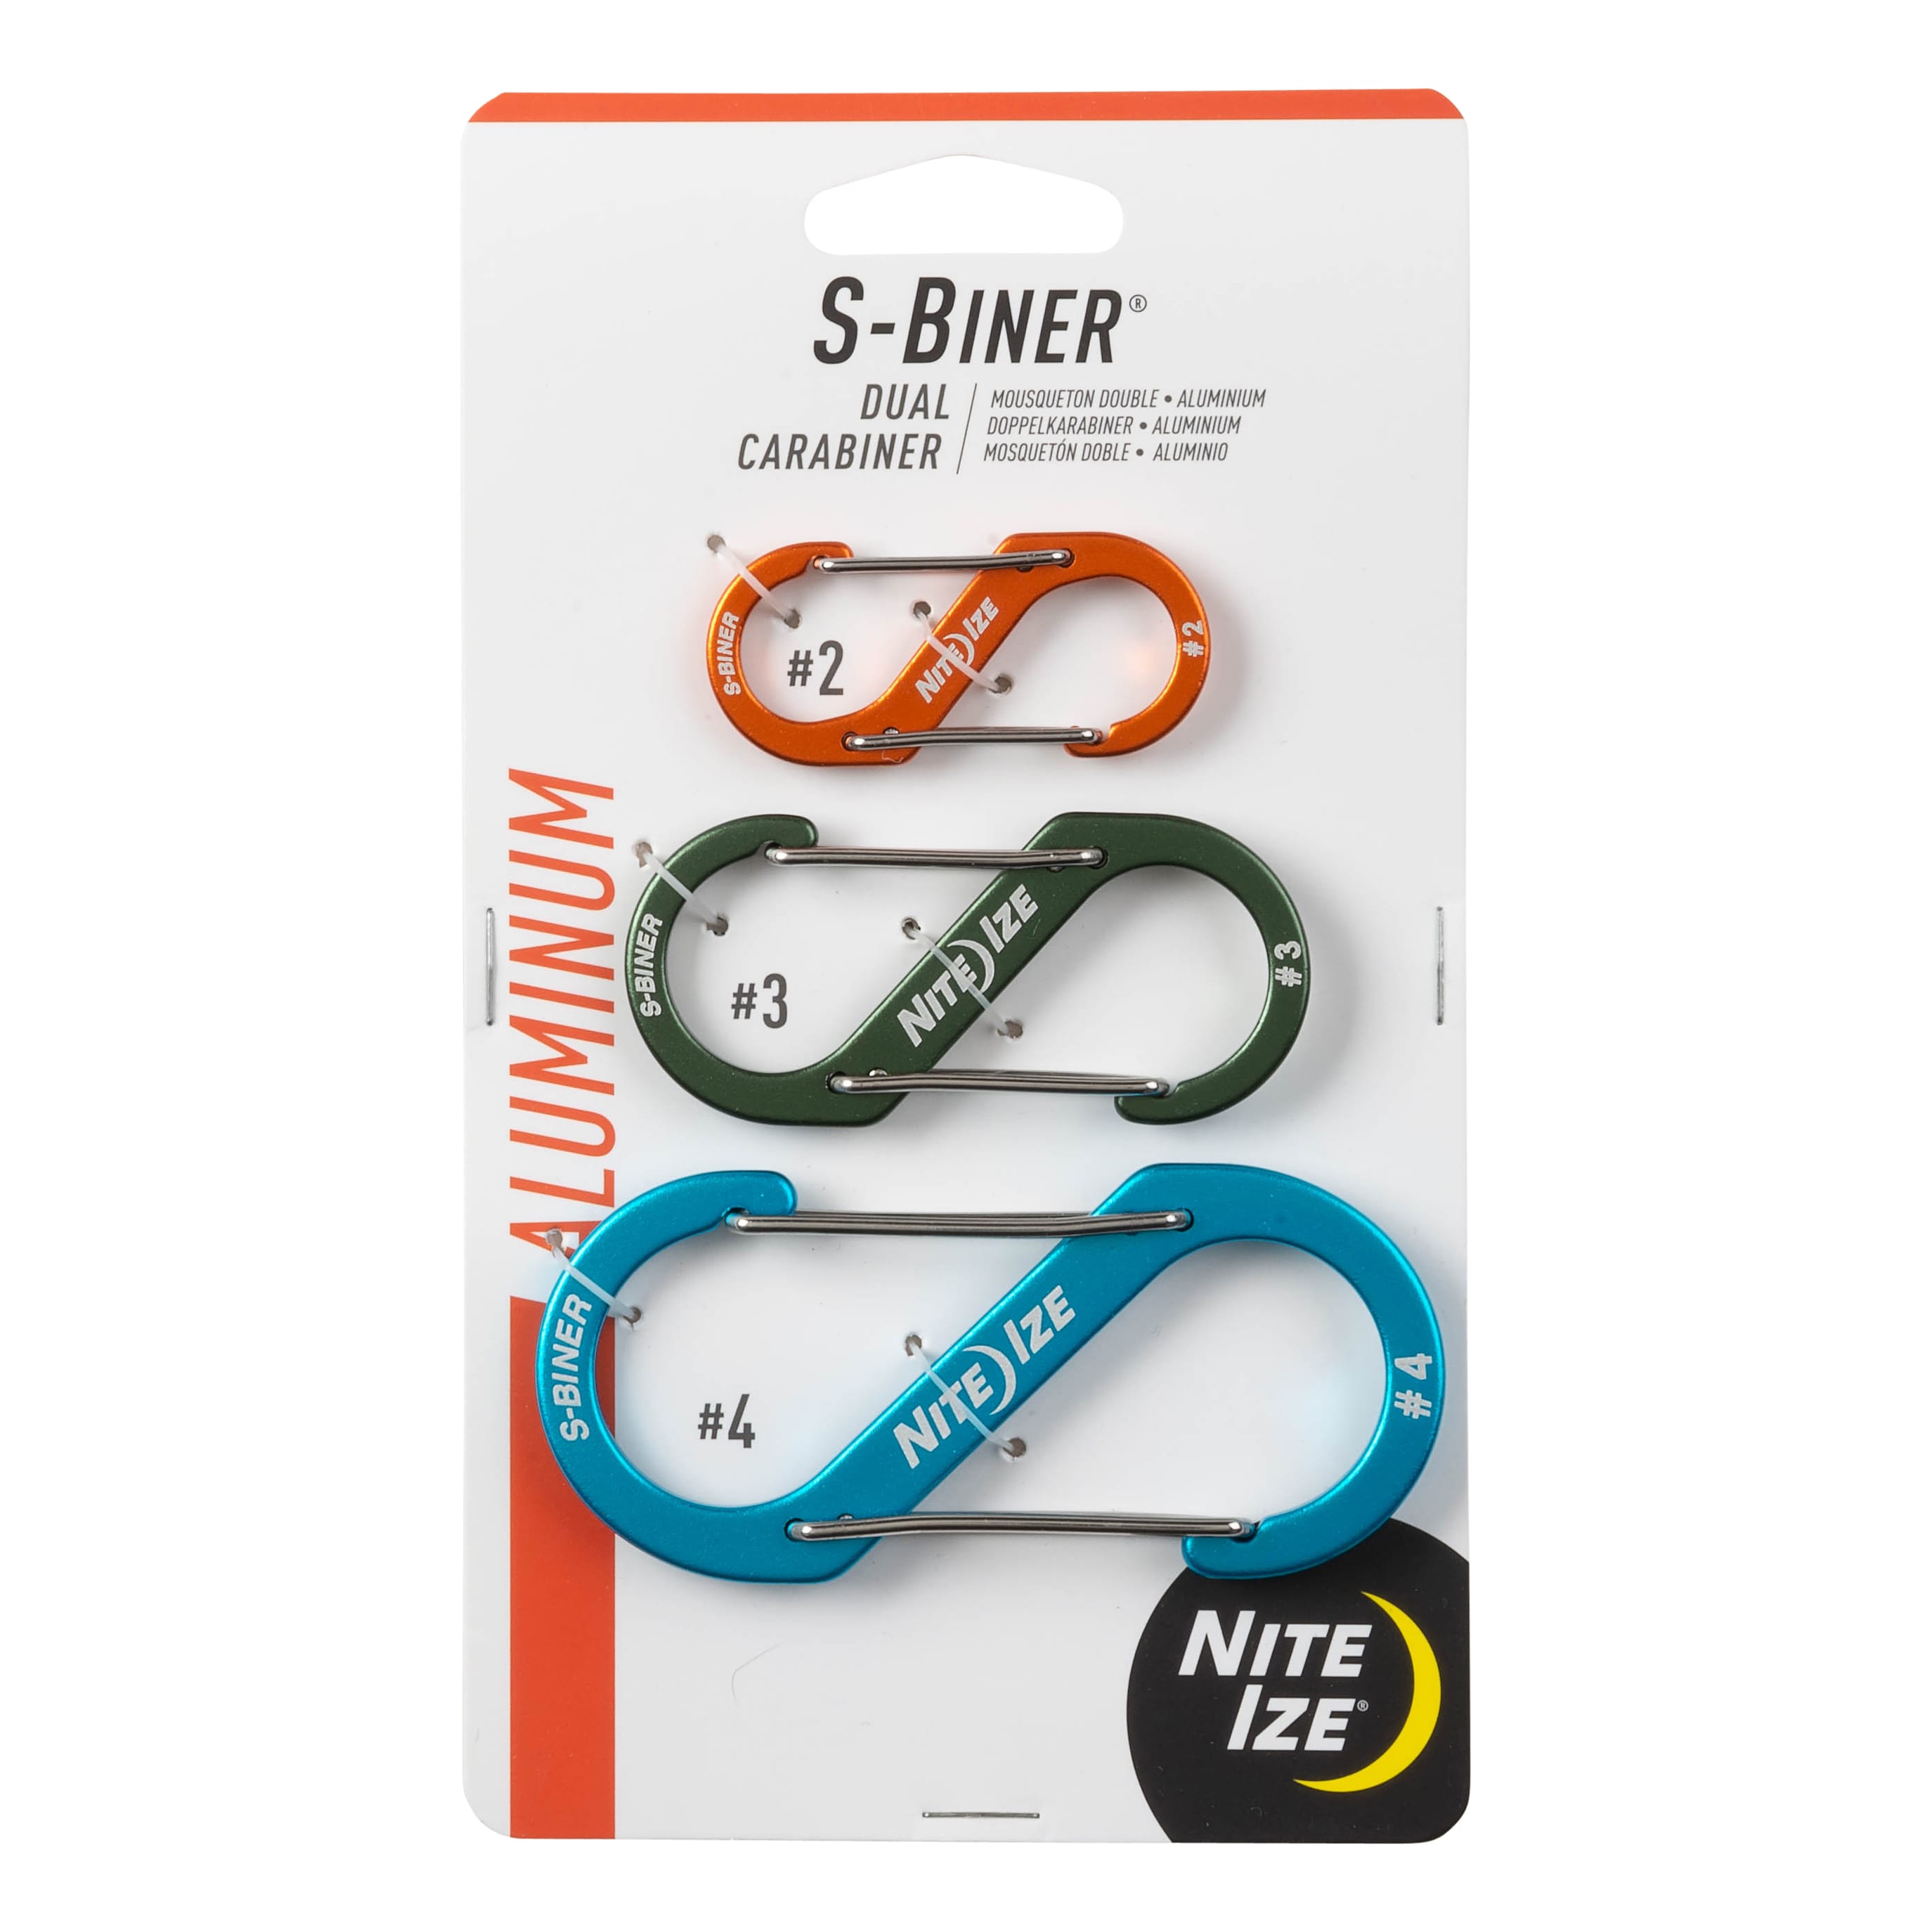 Nite Ize® S-Biner® Aluminum Dual Carabiner - 3 Pack